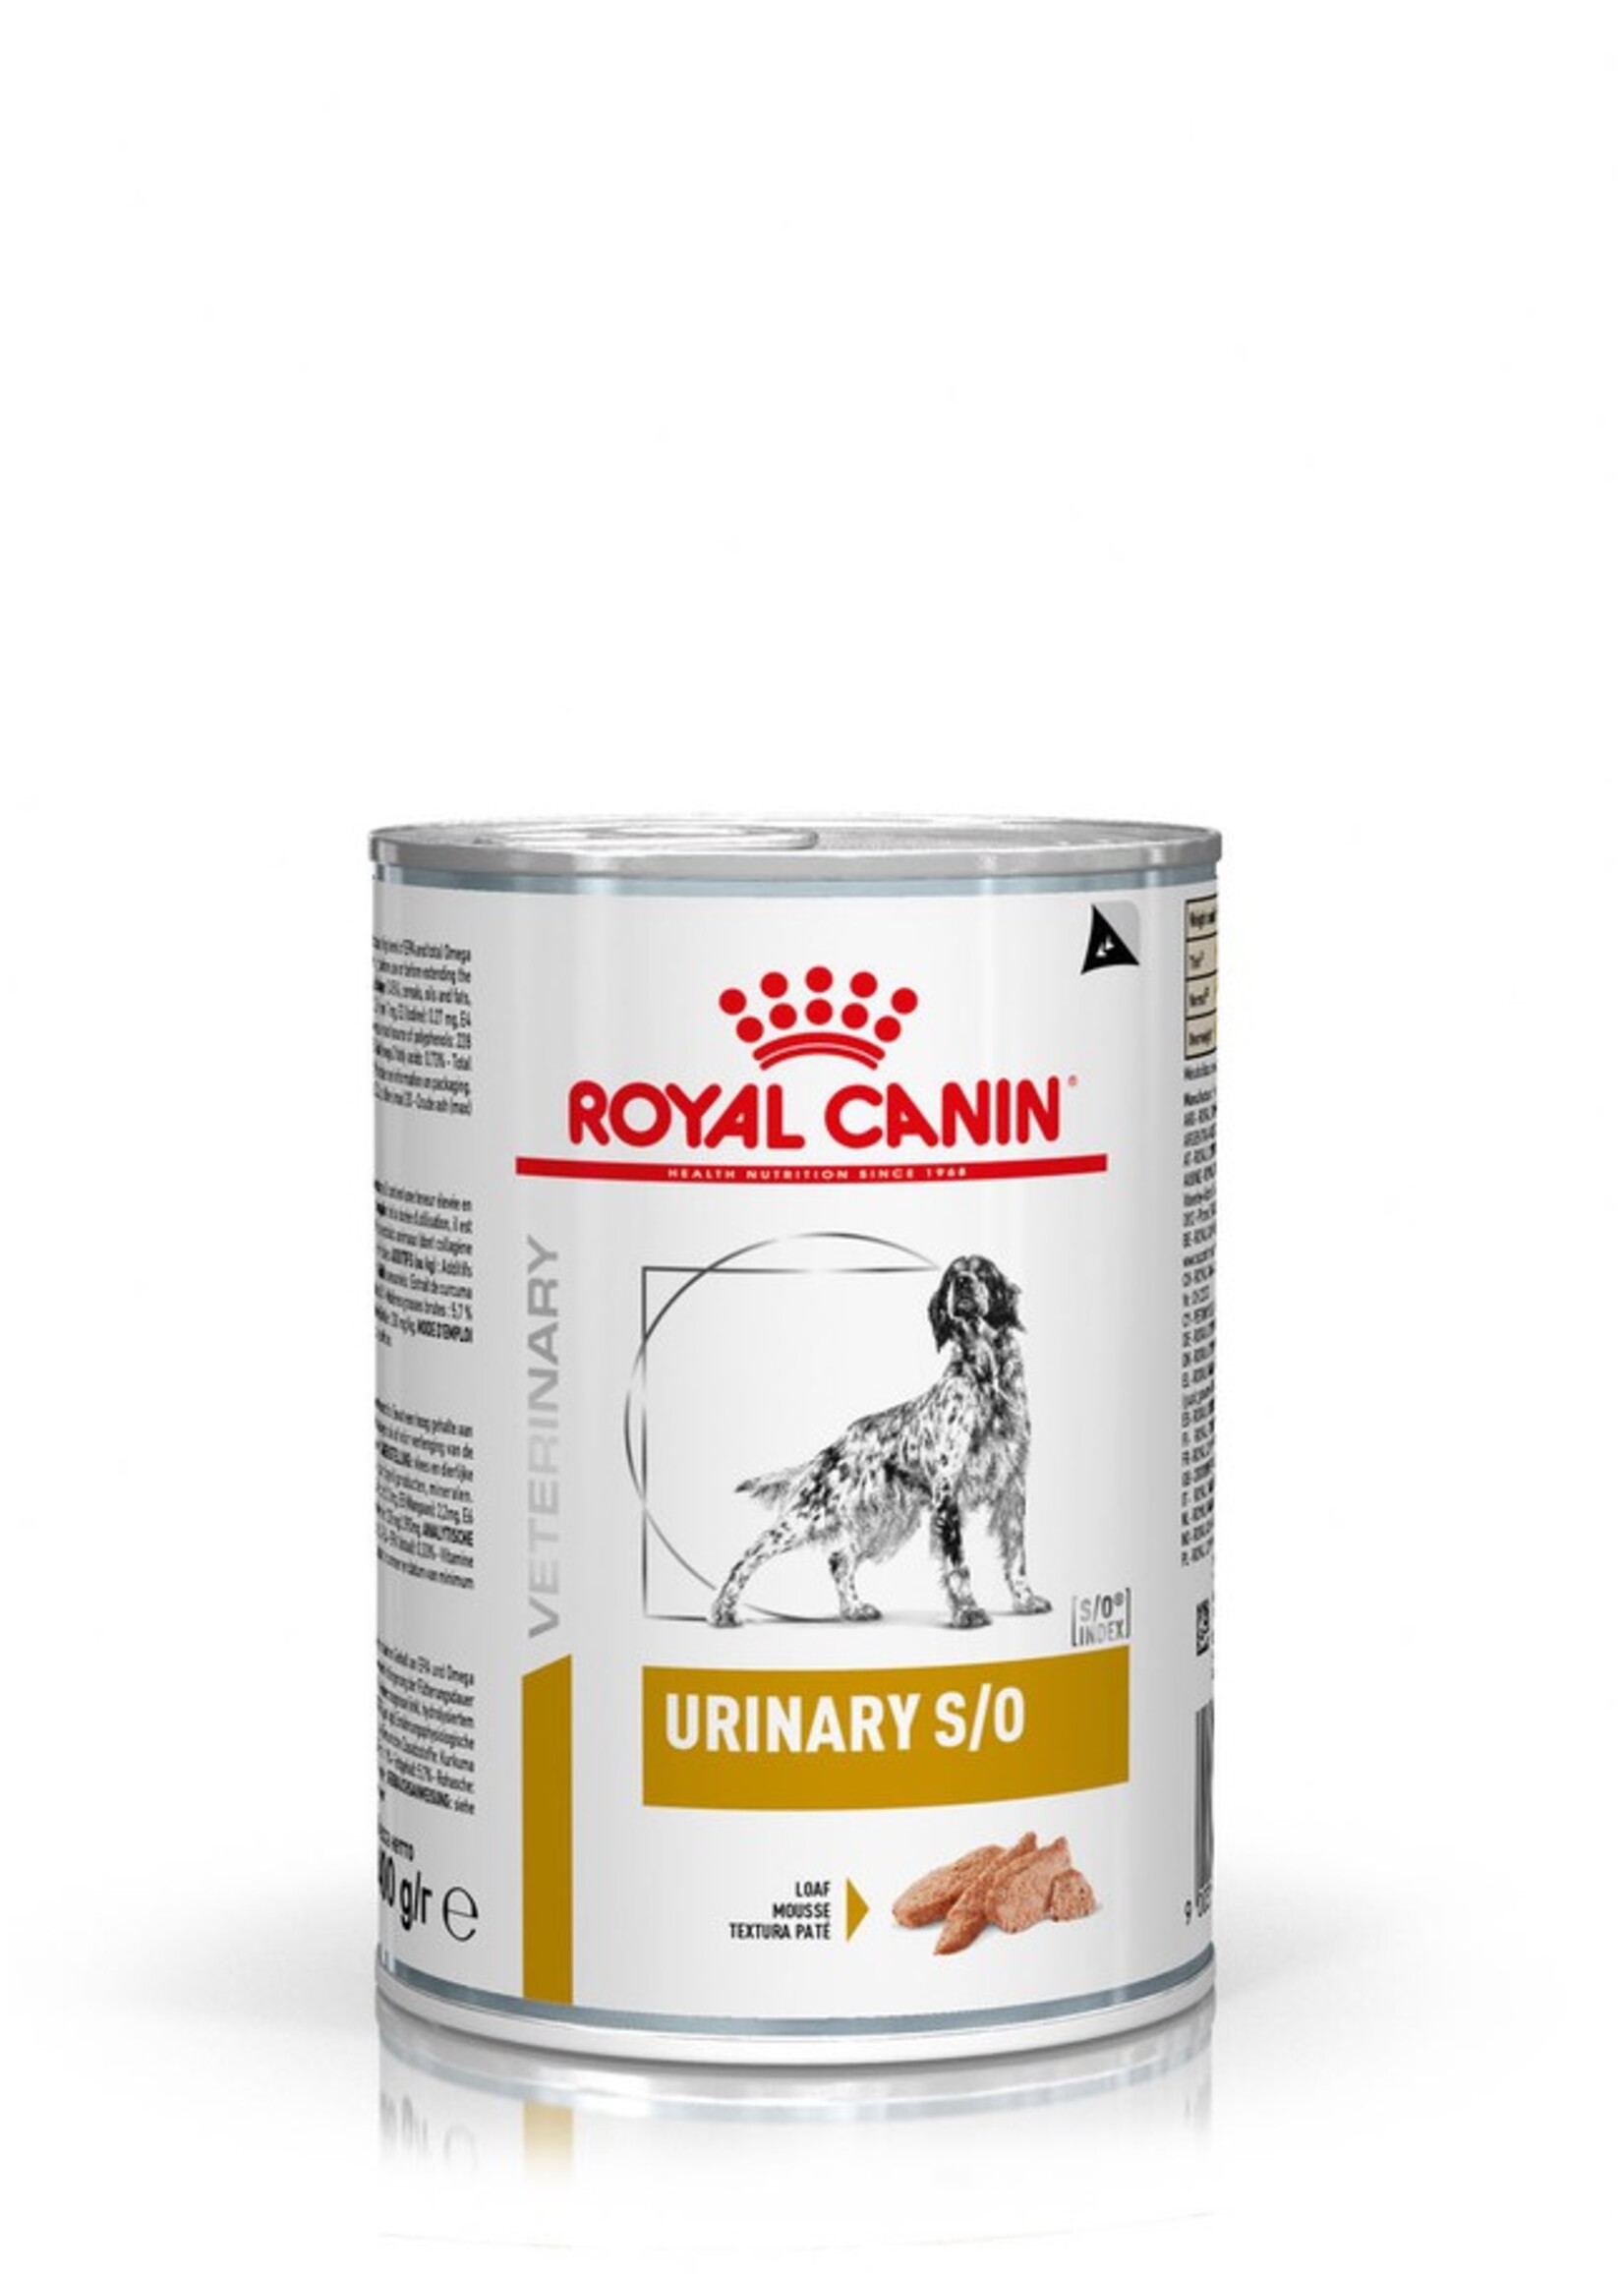 Royal Canin Royal Canin Urinary S/o Hond 12x410gr